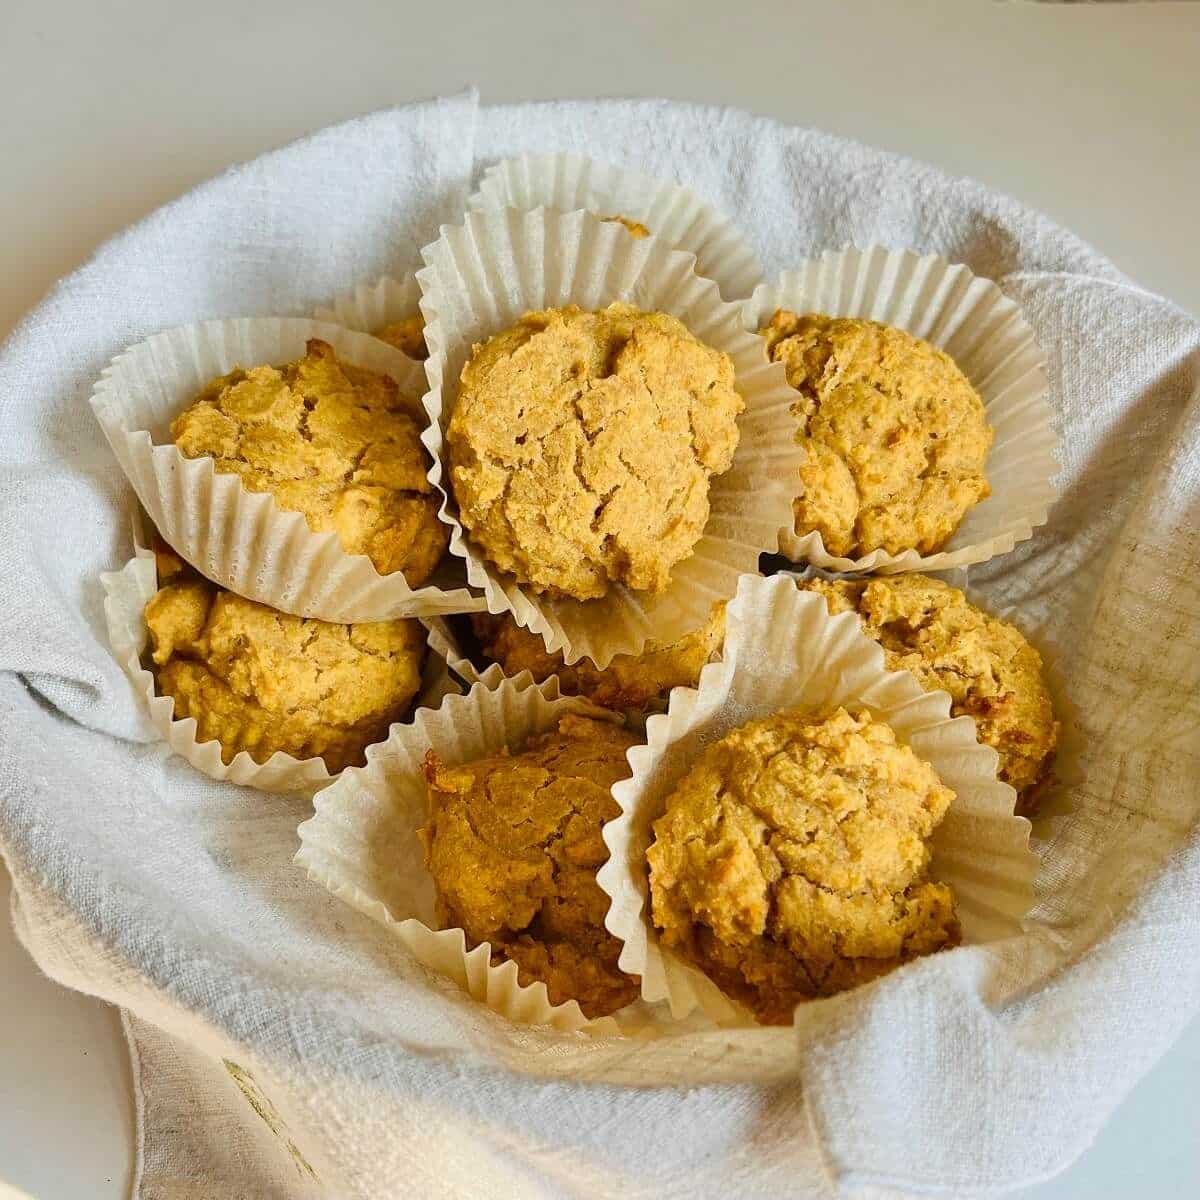 Flavorful corn flour muffins in a blasket.